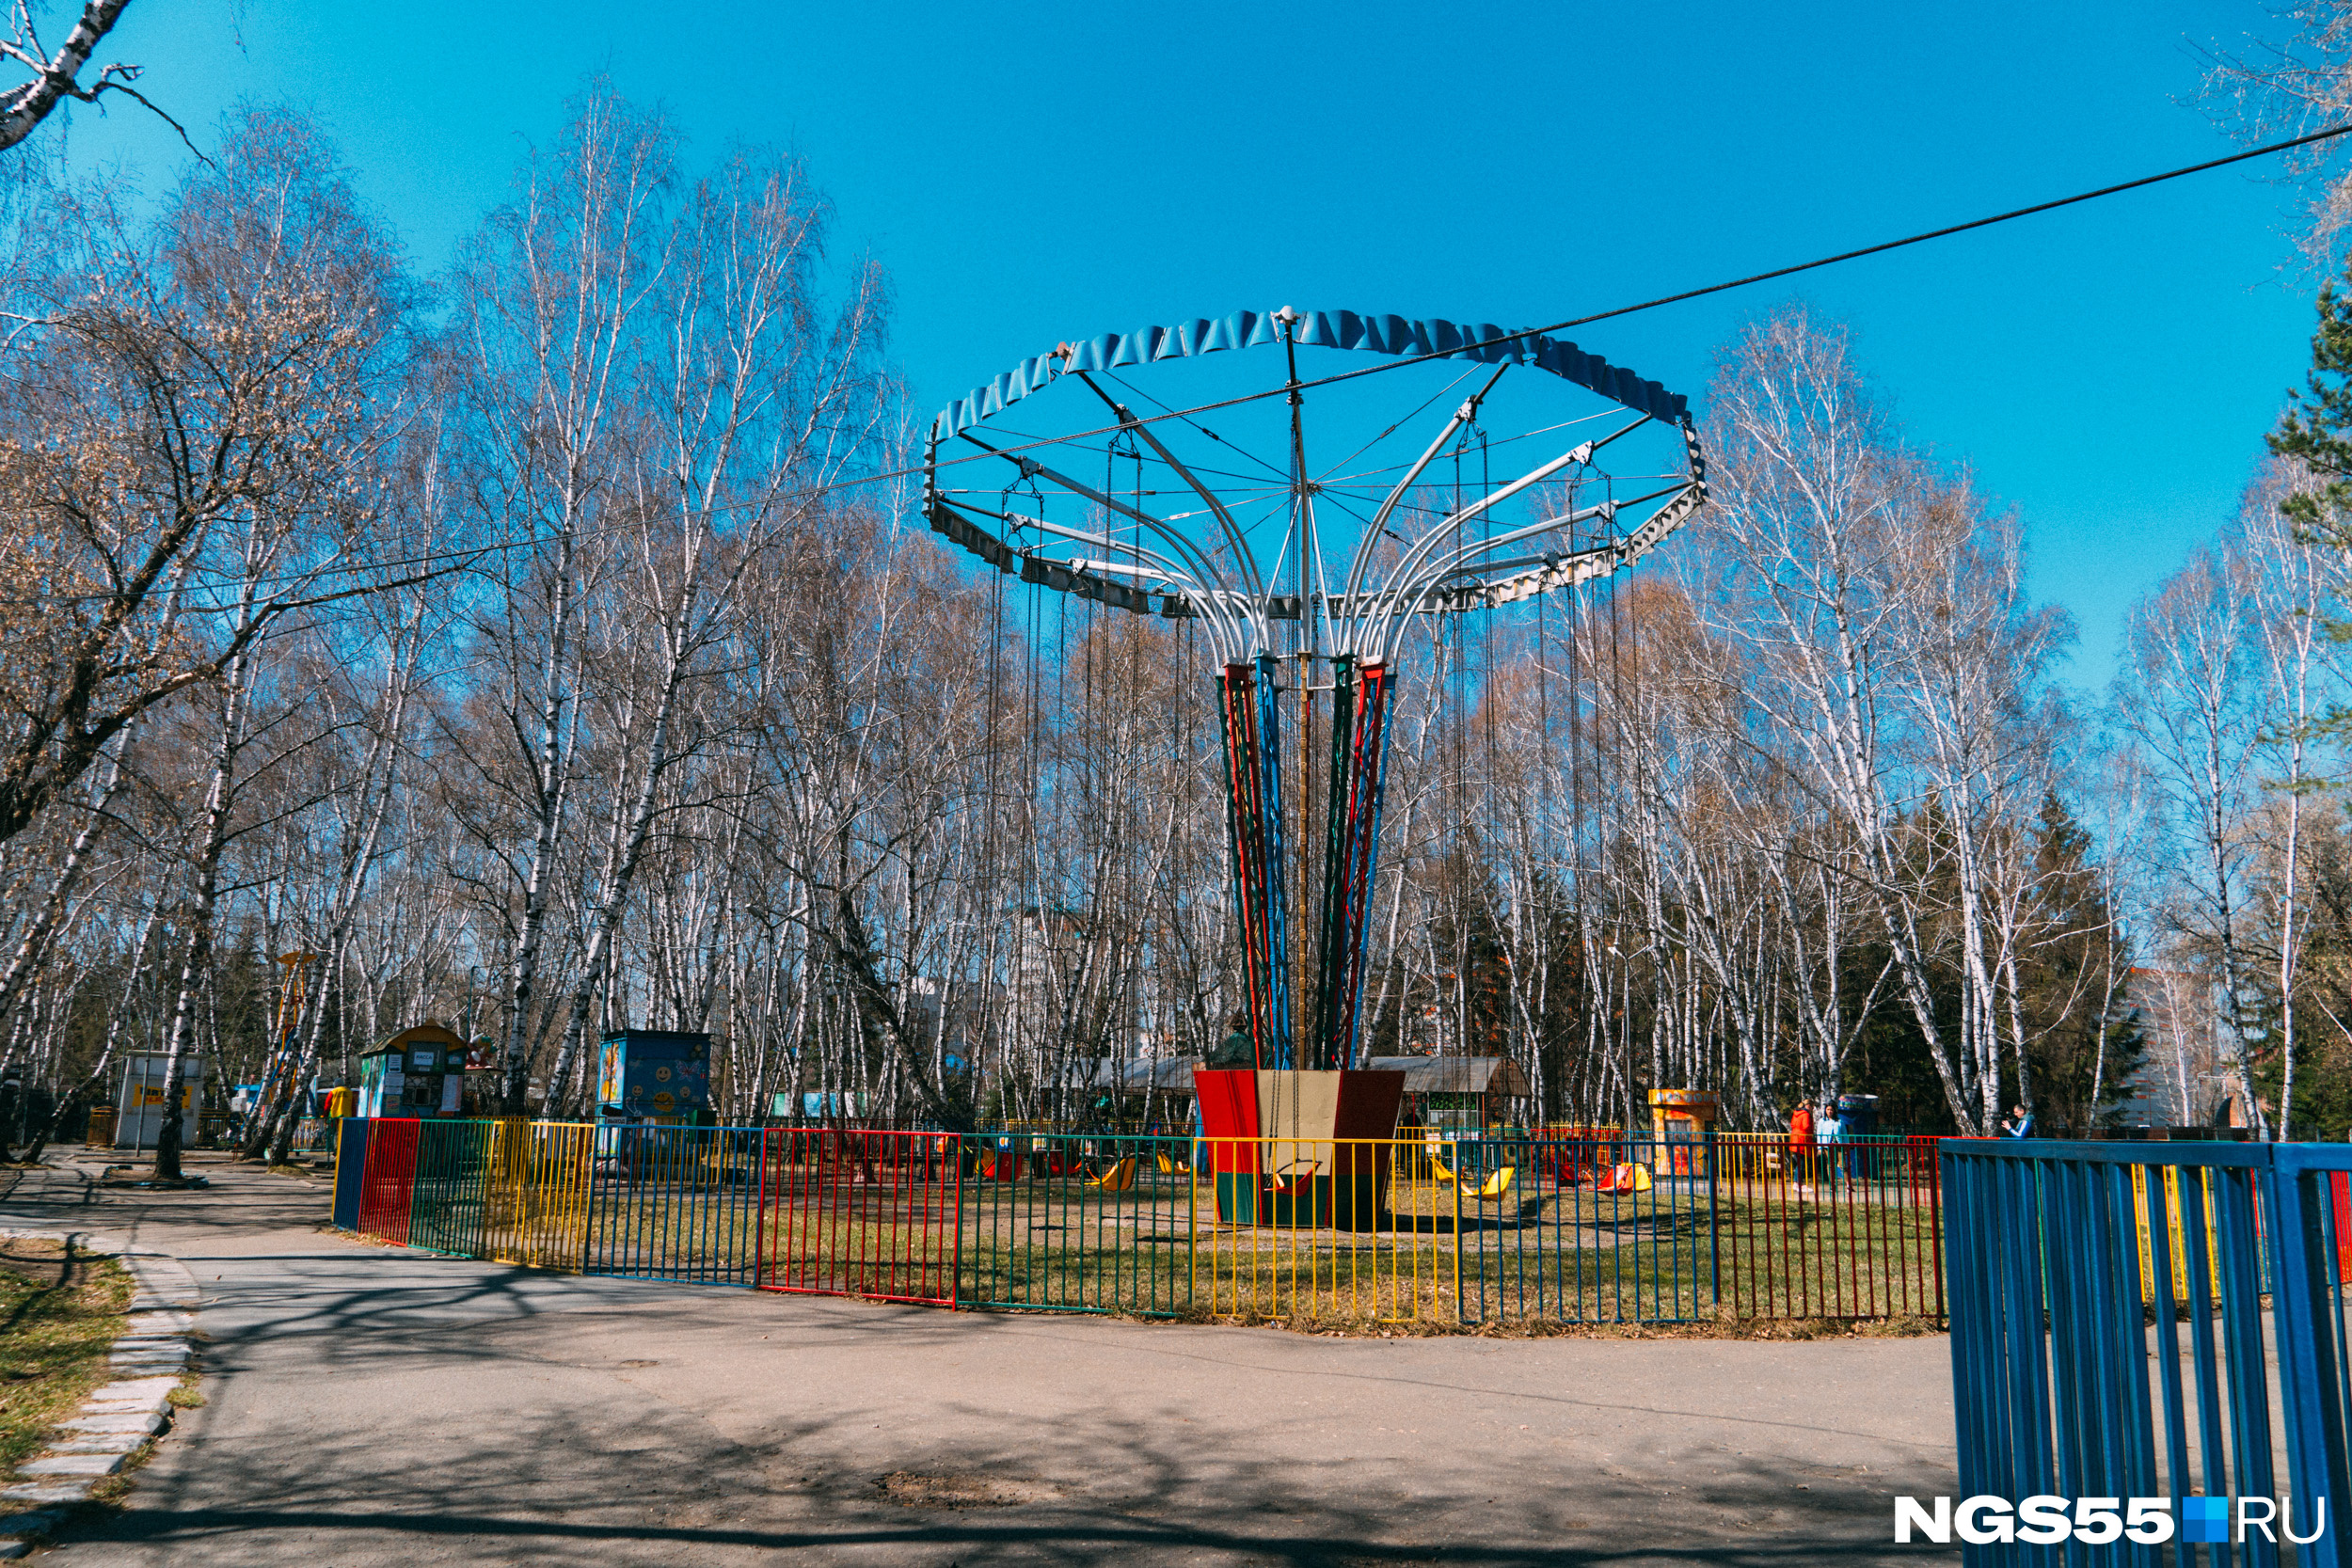 тольятти парк аттракционов